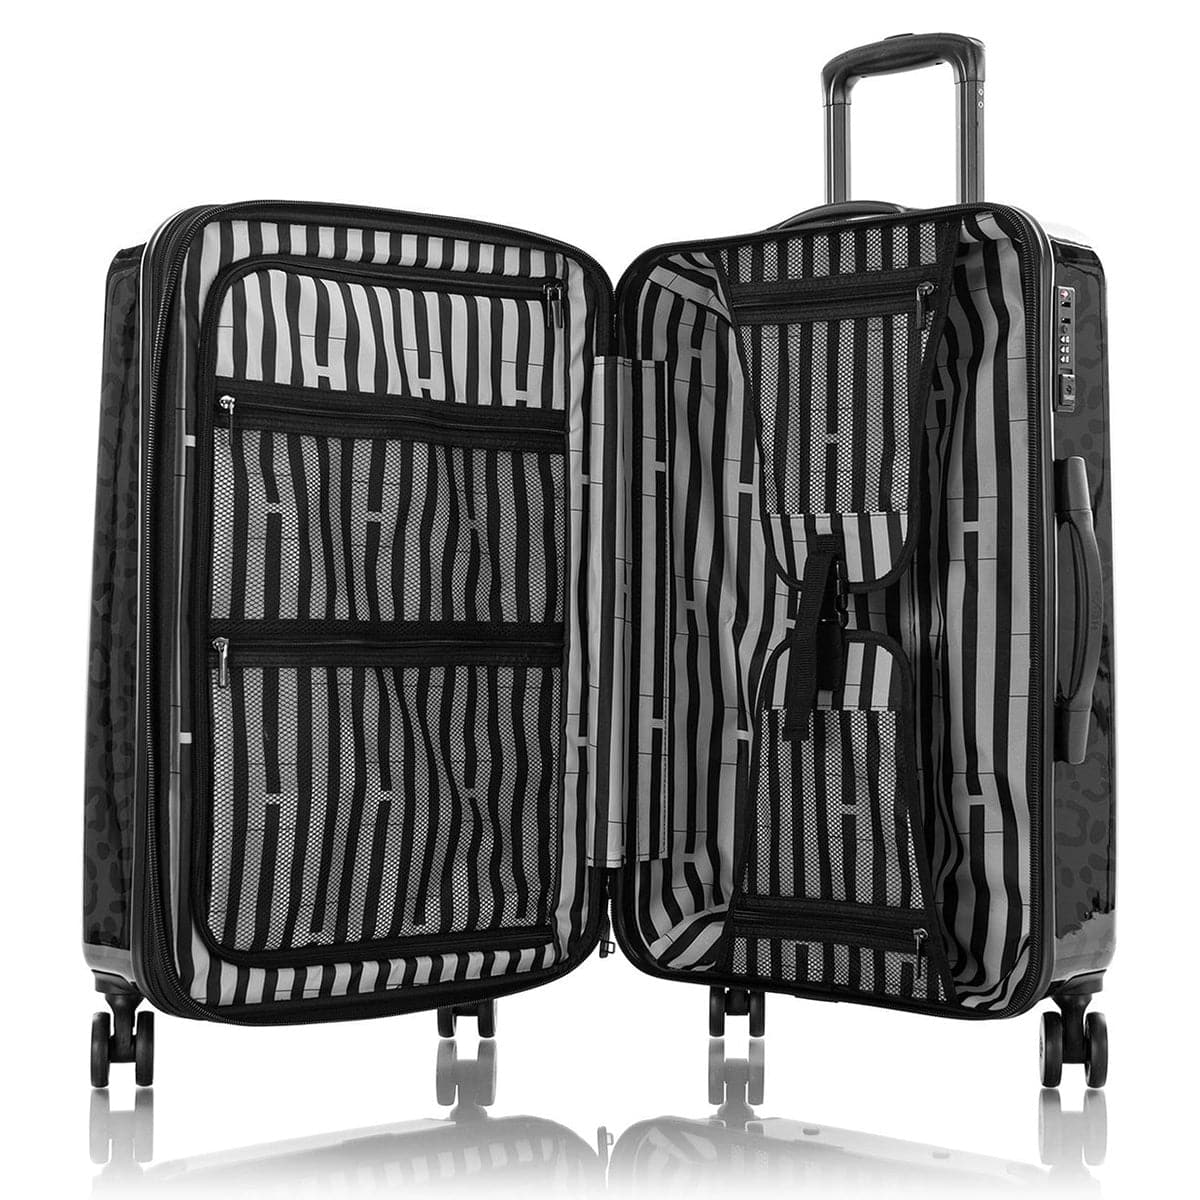 Heys 26" Leopard Fashion Spinner Luggage